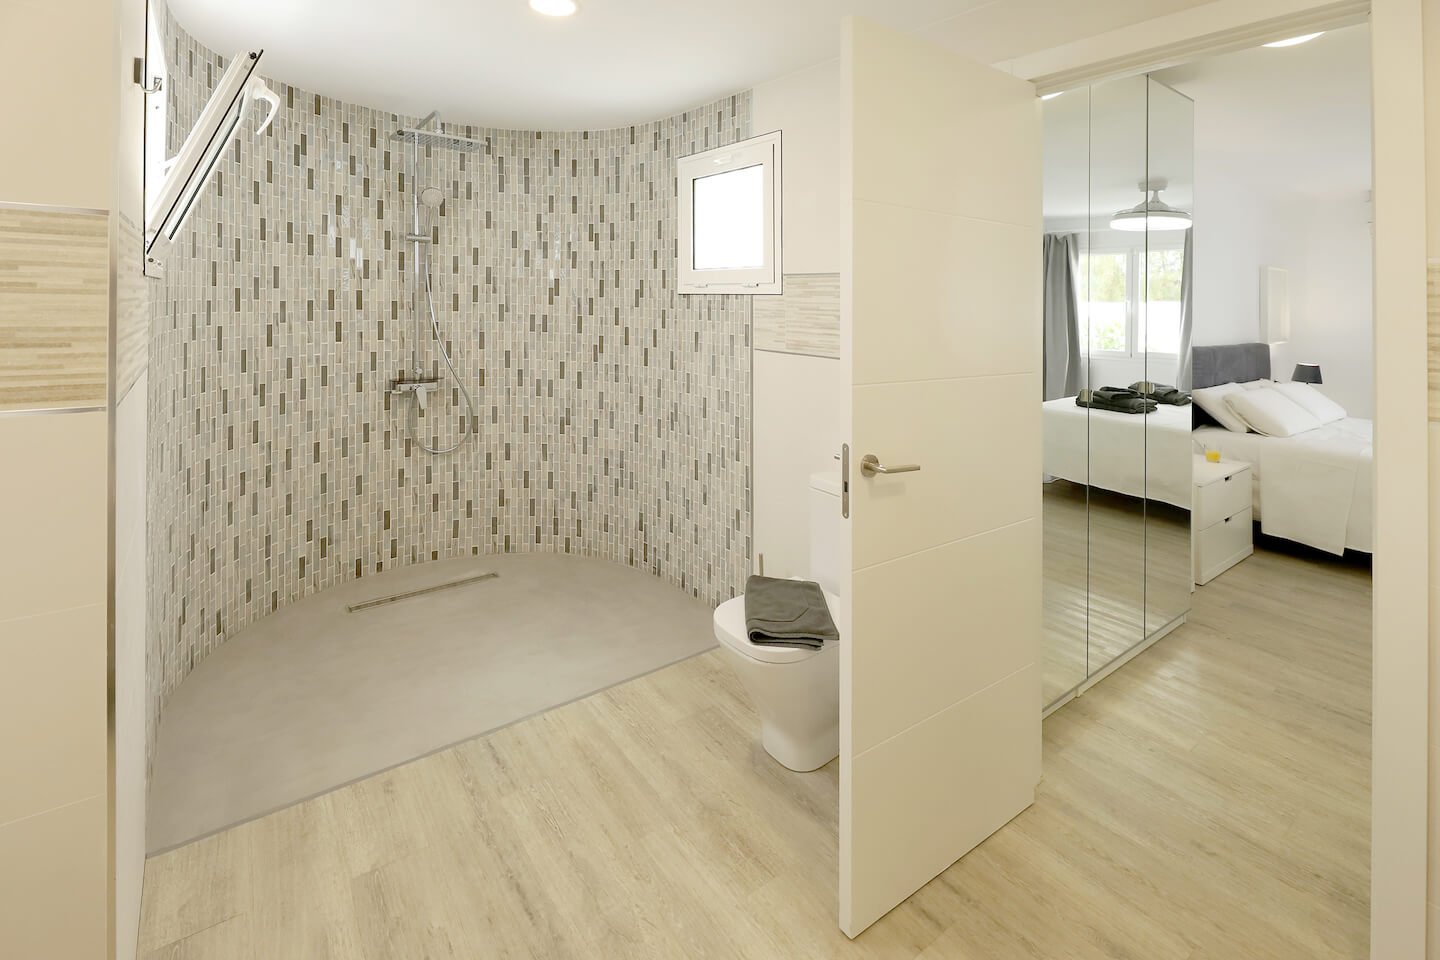 Casa El Paraiso - Puerto del Carmen - Lanzarote - Bathroom